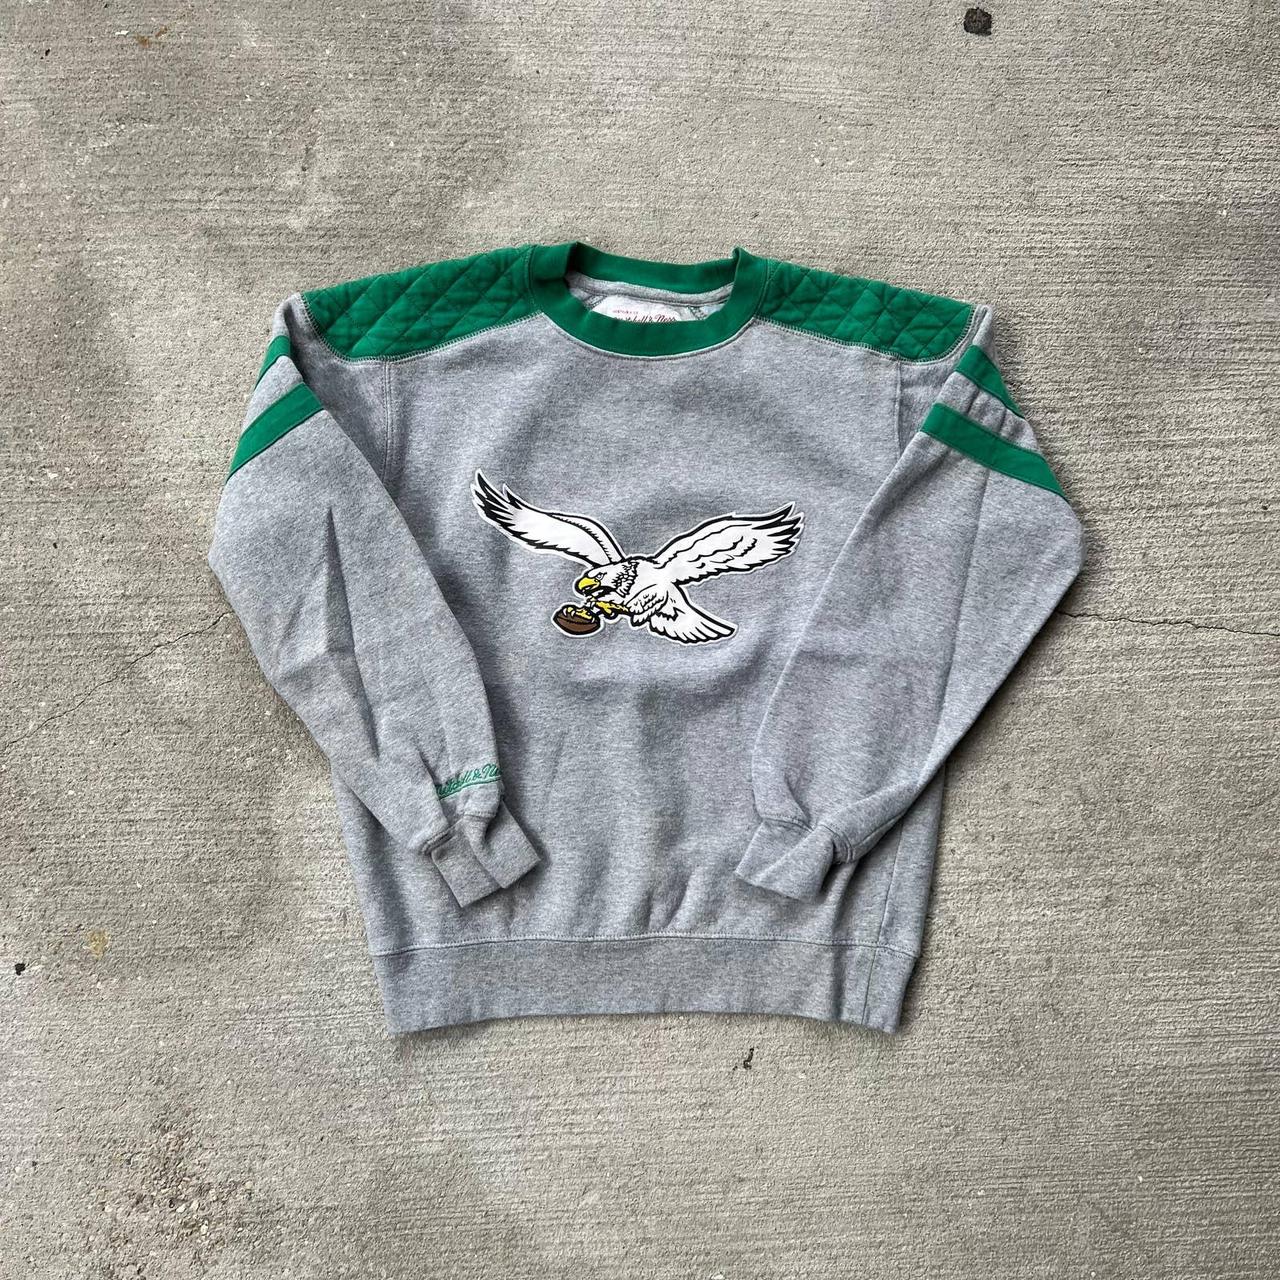 Vintage Philadelphia eagles crewneck sweatshirt. - Depop